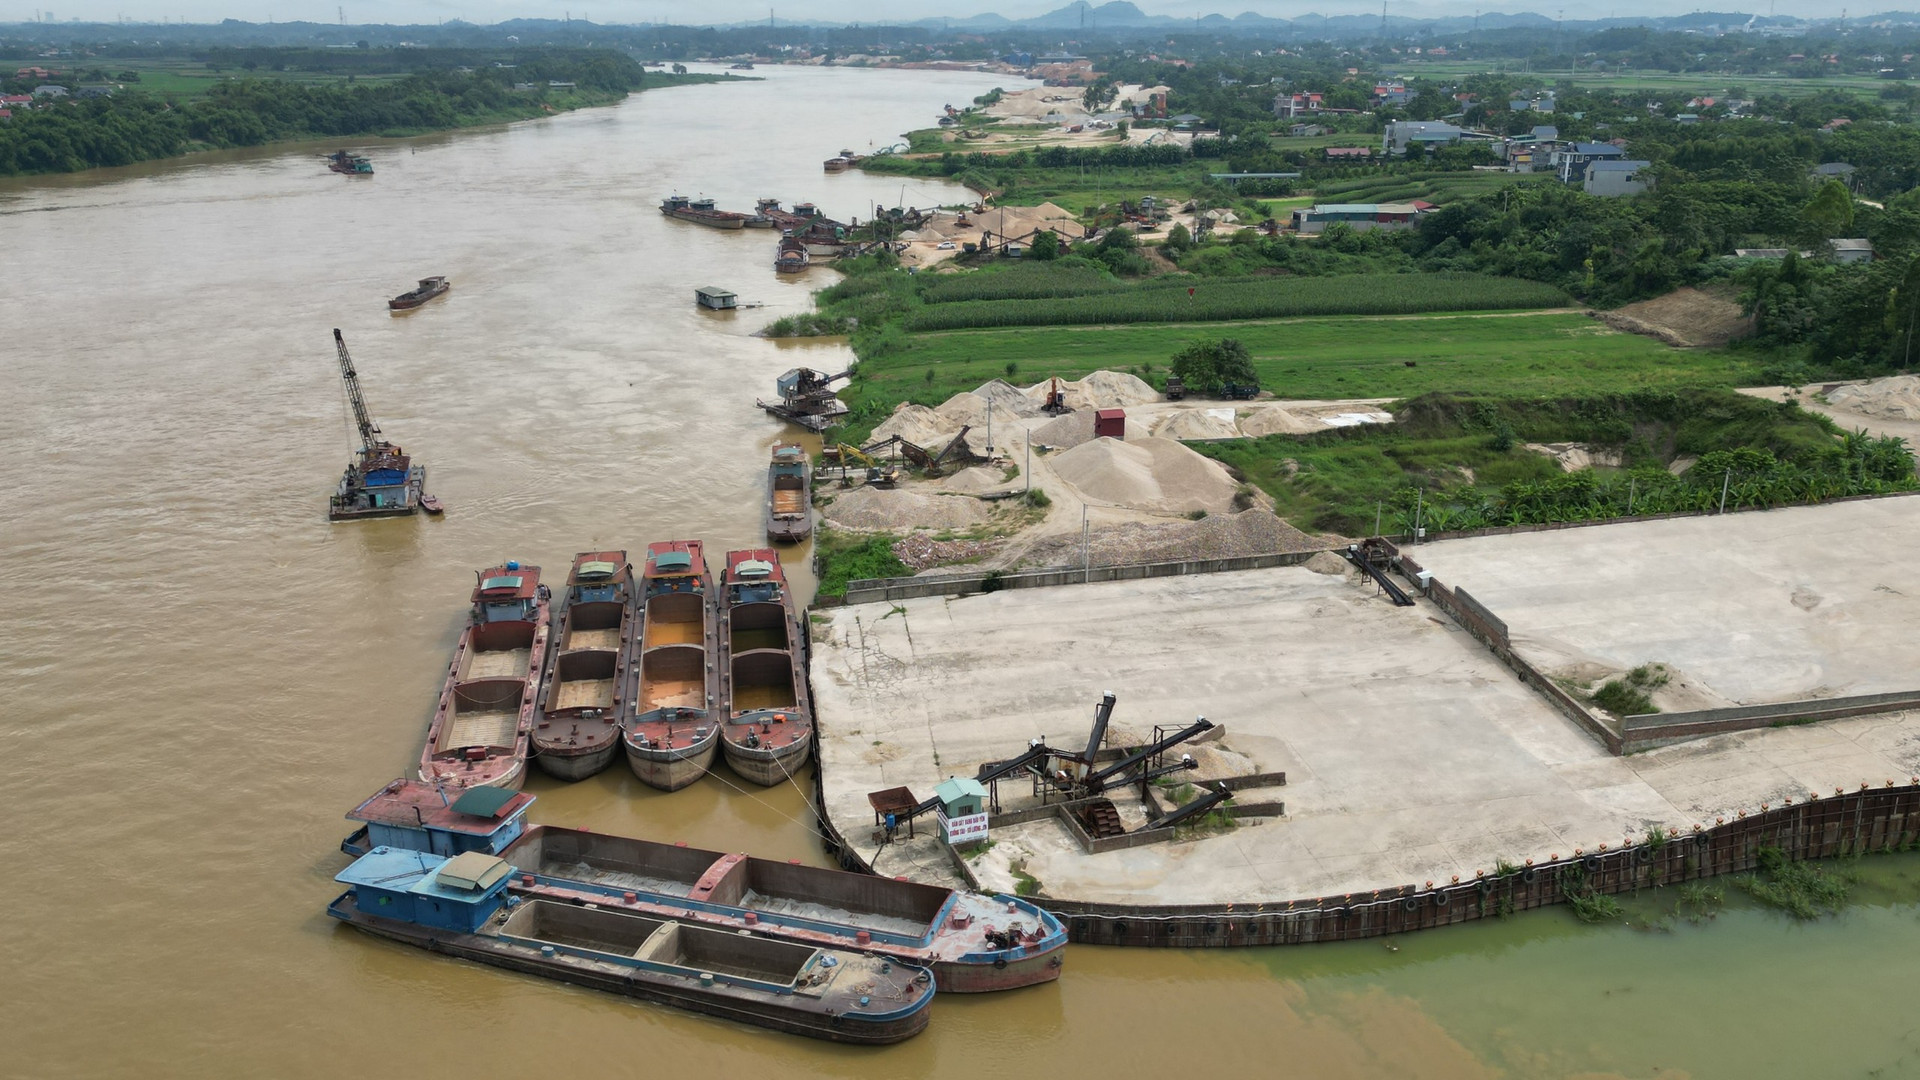 Bến bãi của Công ty Quang Huy mới được chấp thuận chủ trương đầu tư và giao đất...